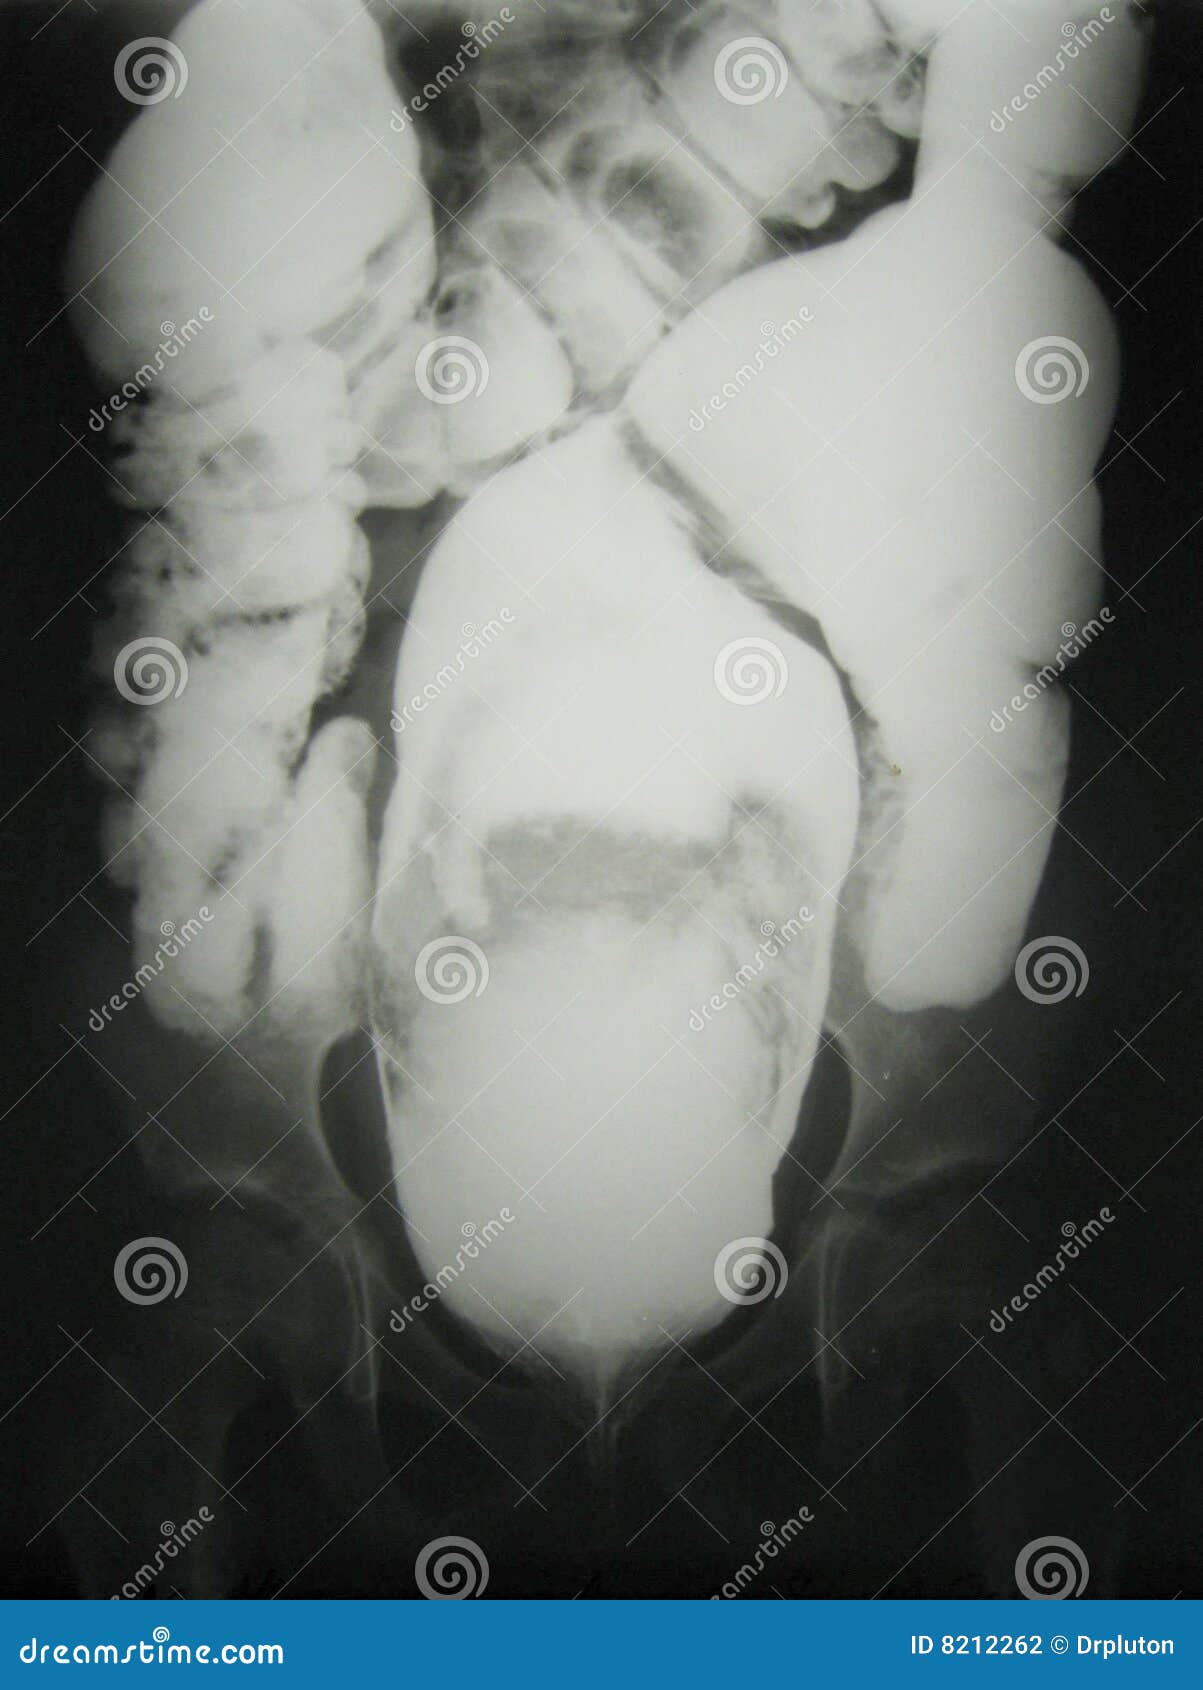 x-ray diagnostics/bowel